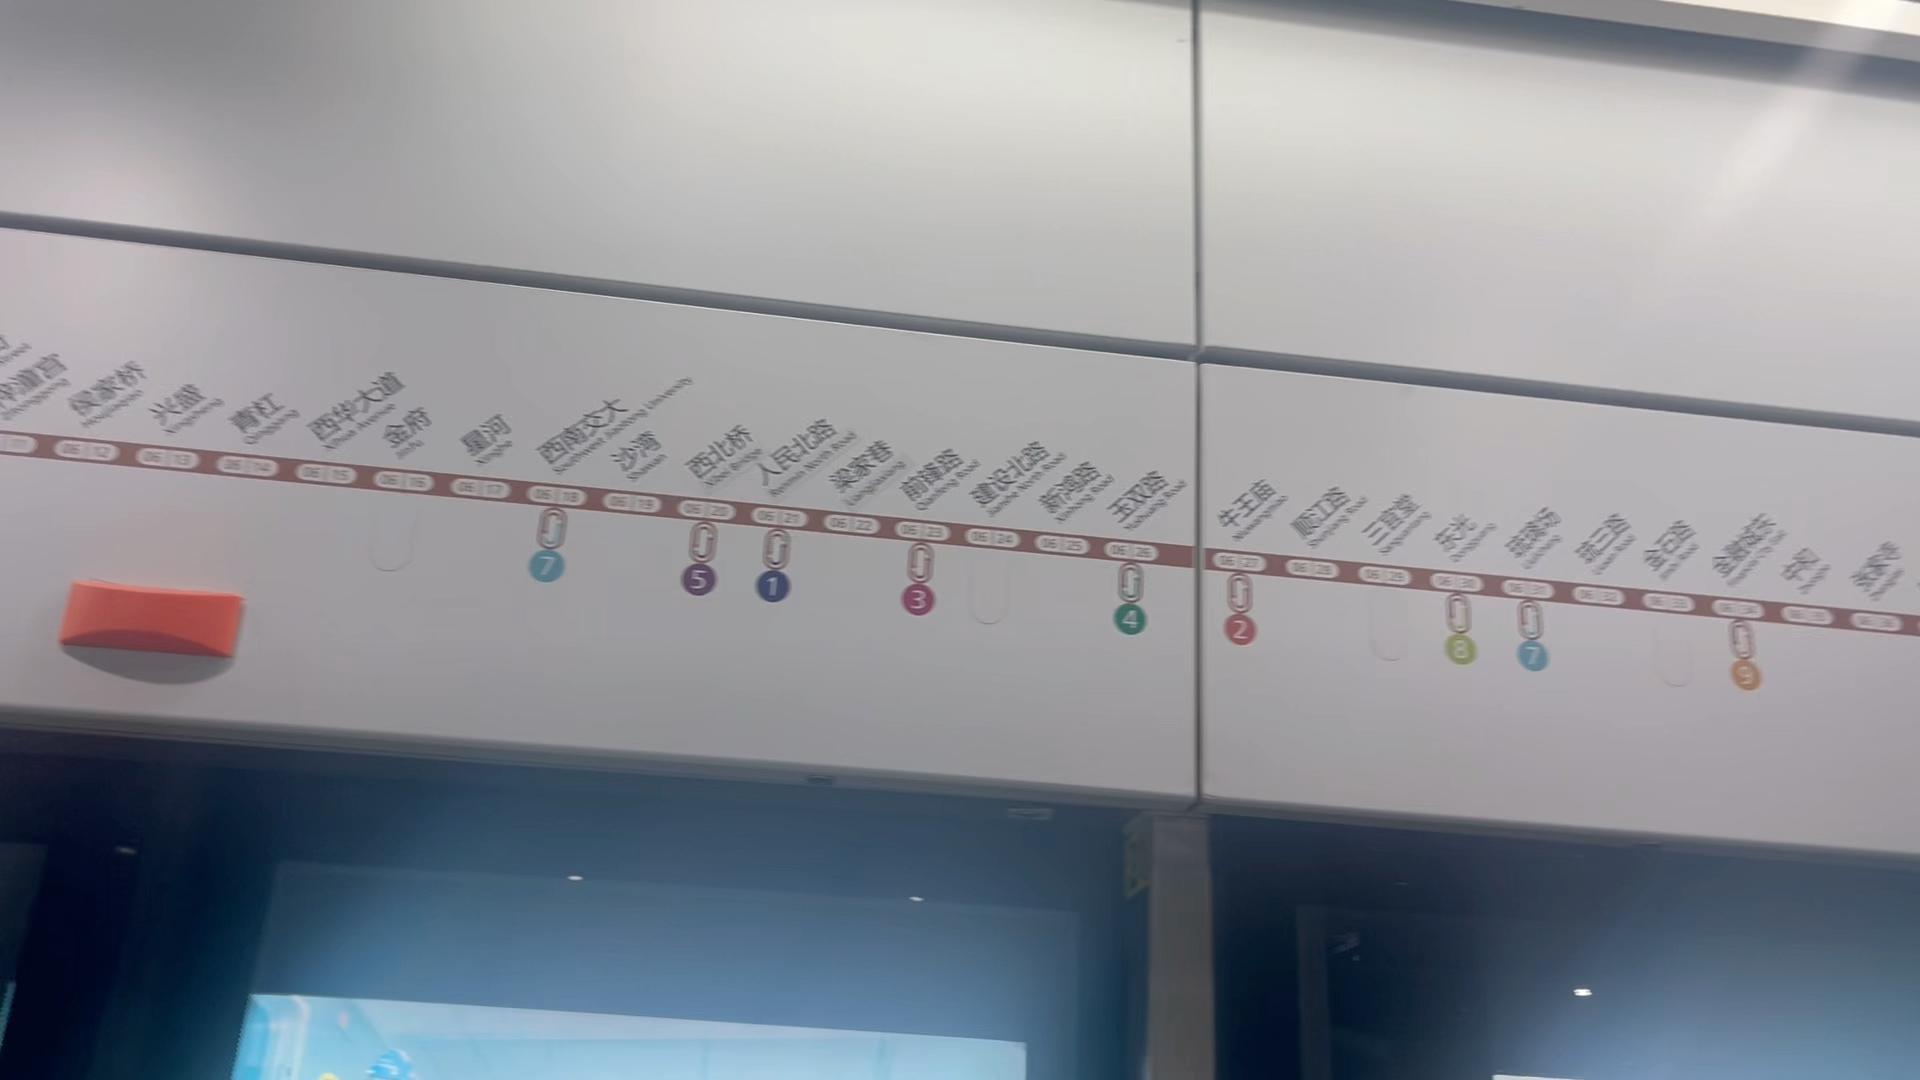 成都地铁6号线票价表图片